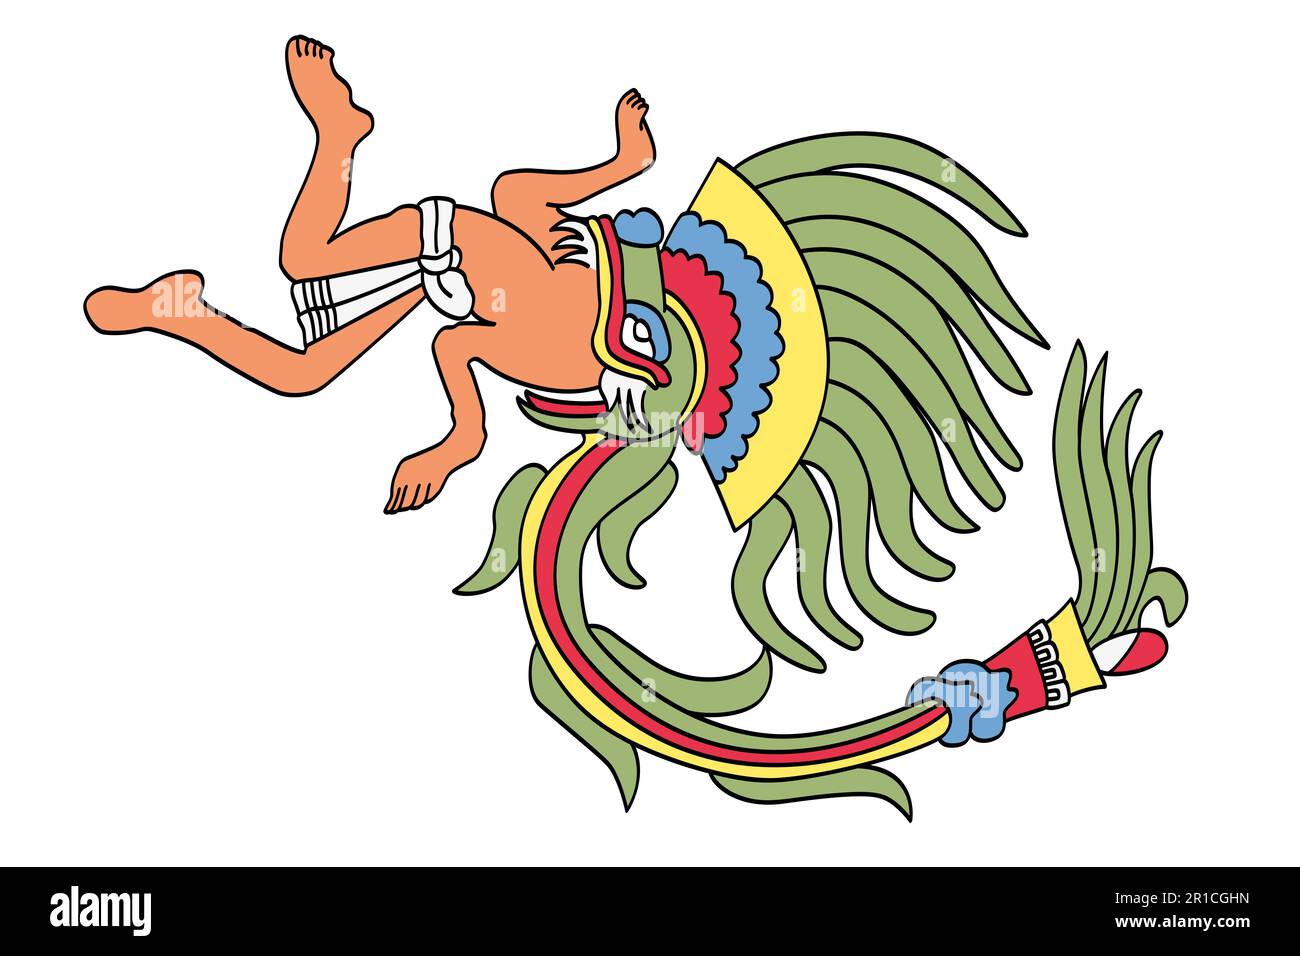 Quetzalcoatl als gefiederte Schlange, aztekischer gott. Die plumpe Schlange ist der Doppelnatur der Gottheit verfallen. Stockfoto